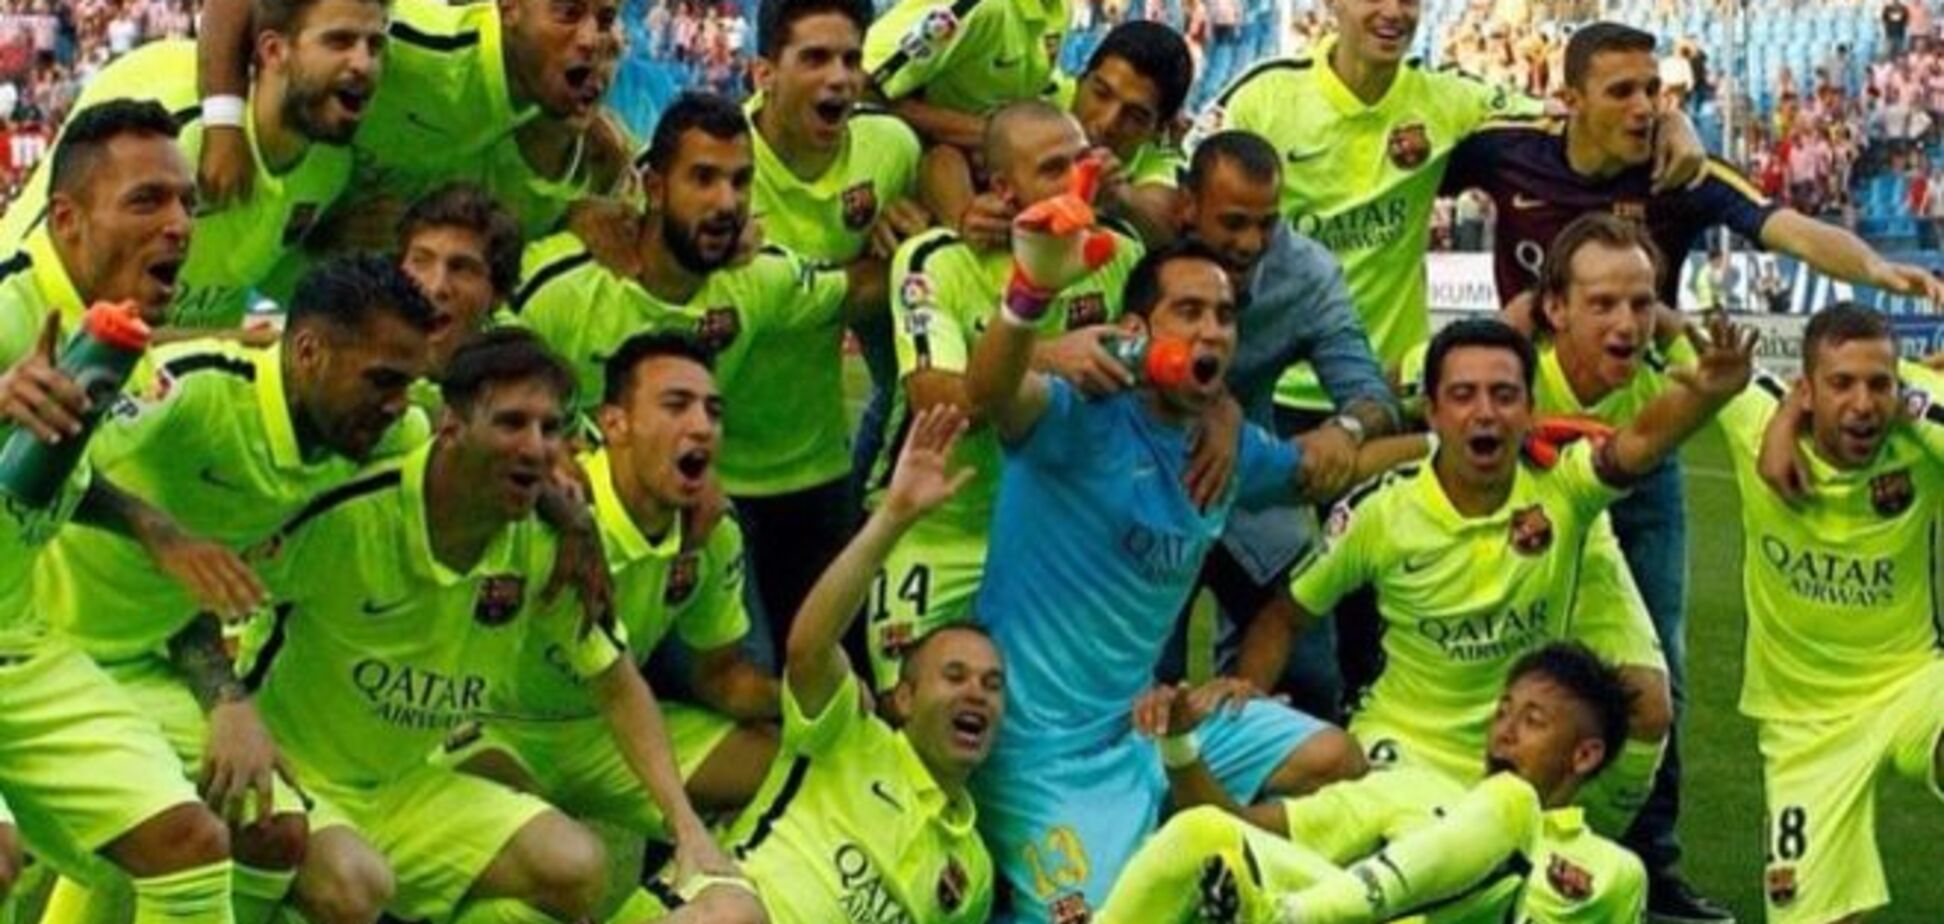 Футболисты 'Барселоны' подурачились, празднуя чемпионство: яркое видео